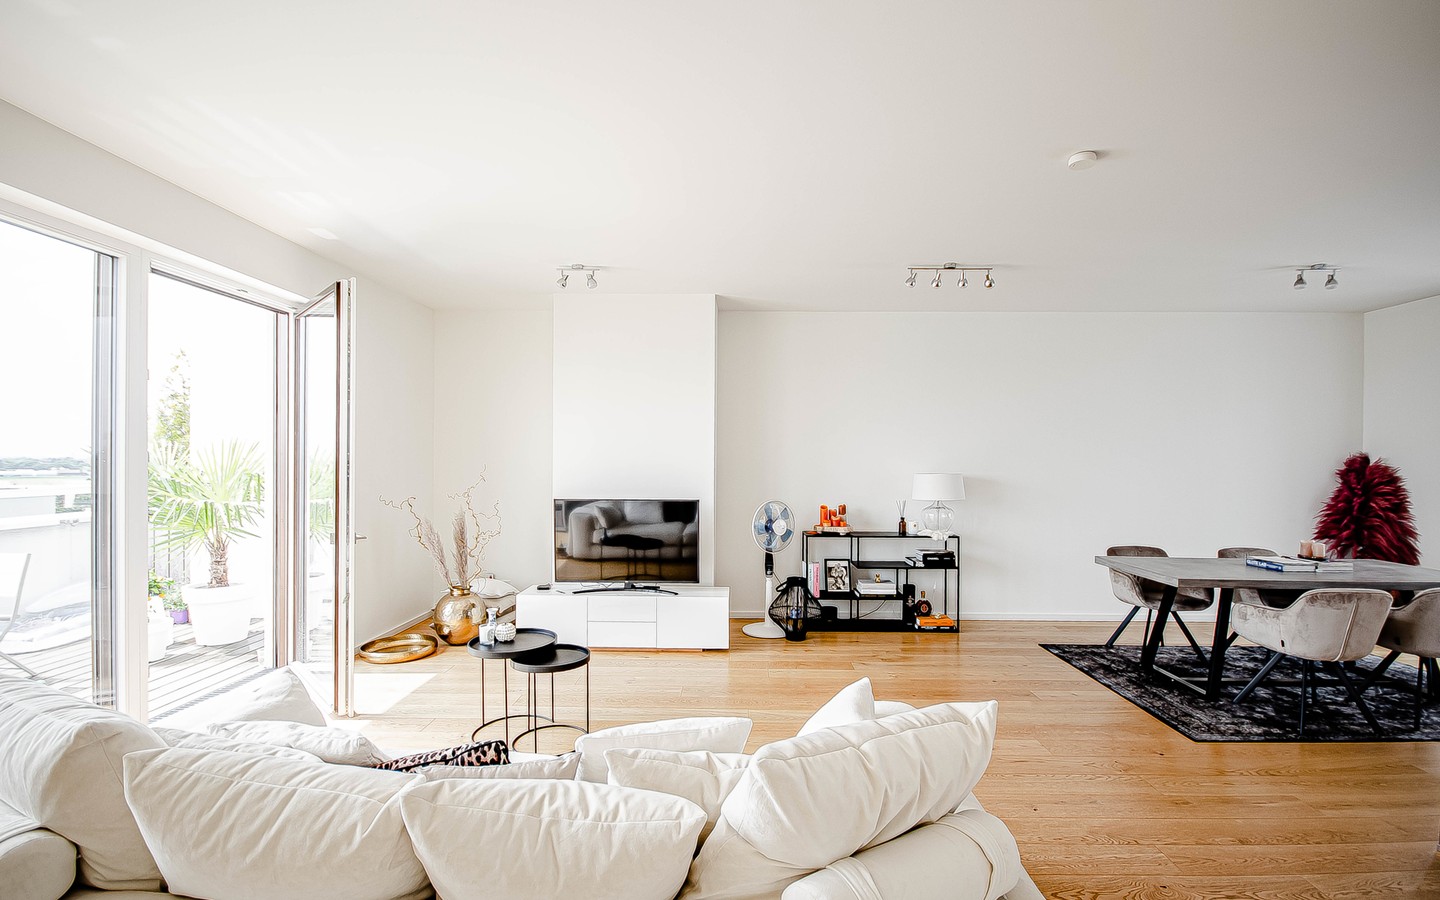 Wohn- und Essbereich - Ein Hauch von Luxus:
Imposante Penthouse Wohnung mit vielen Extras